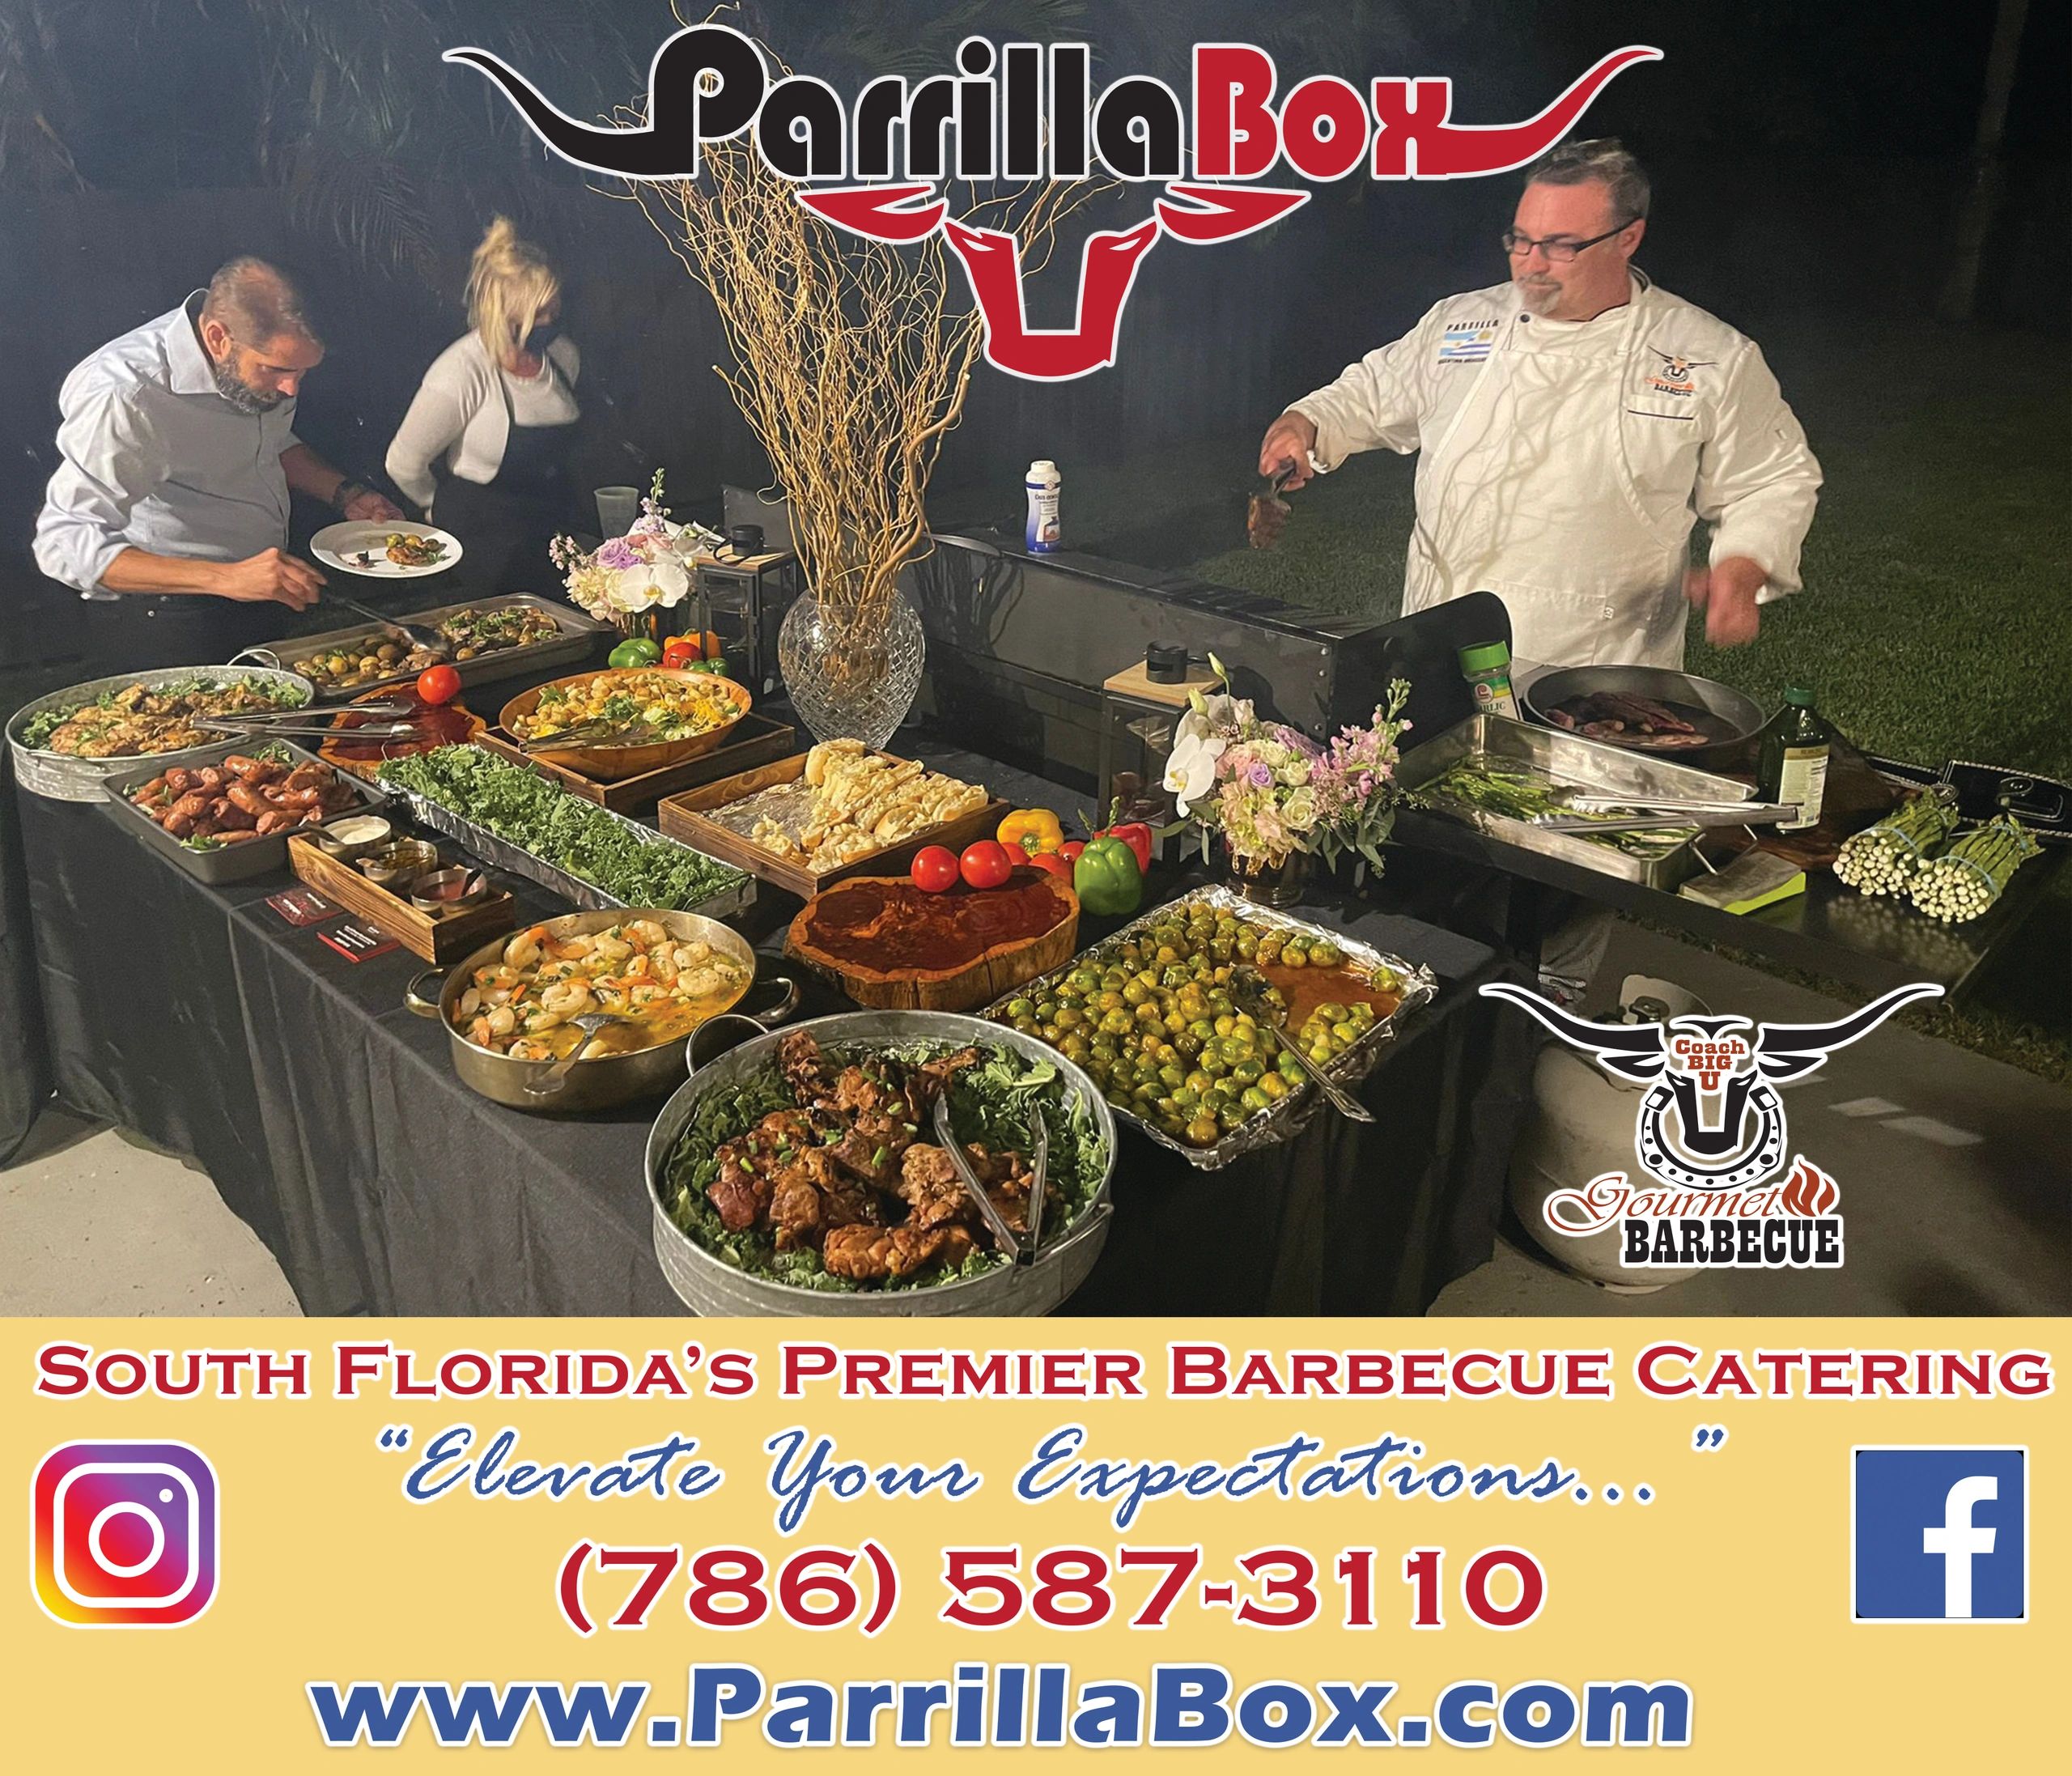 Personal chef services Miami - Chef Services Parrilla Box